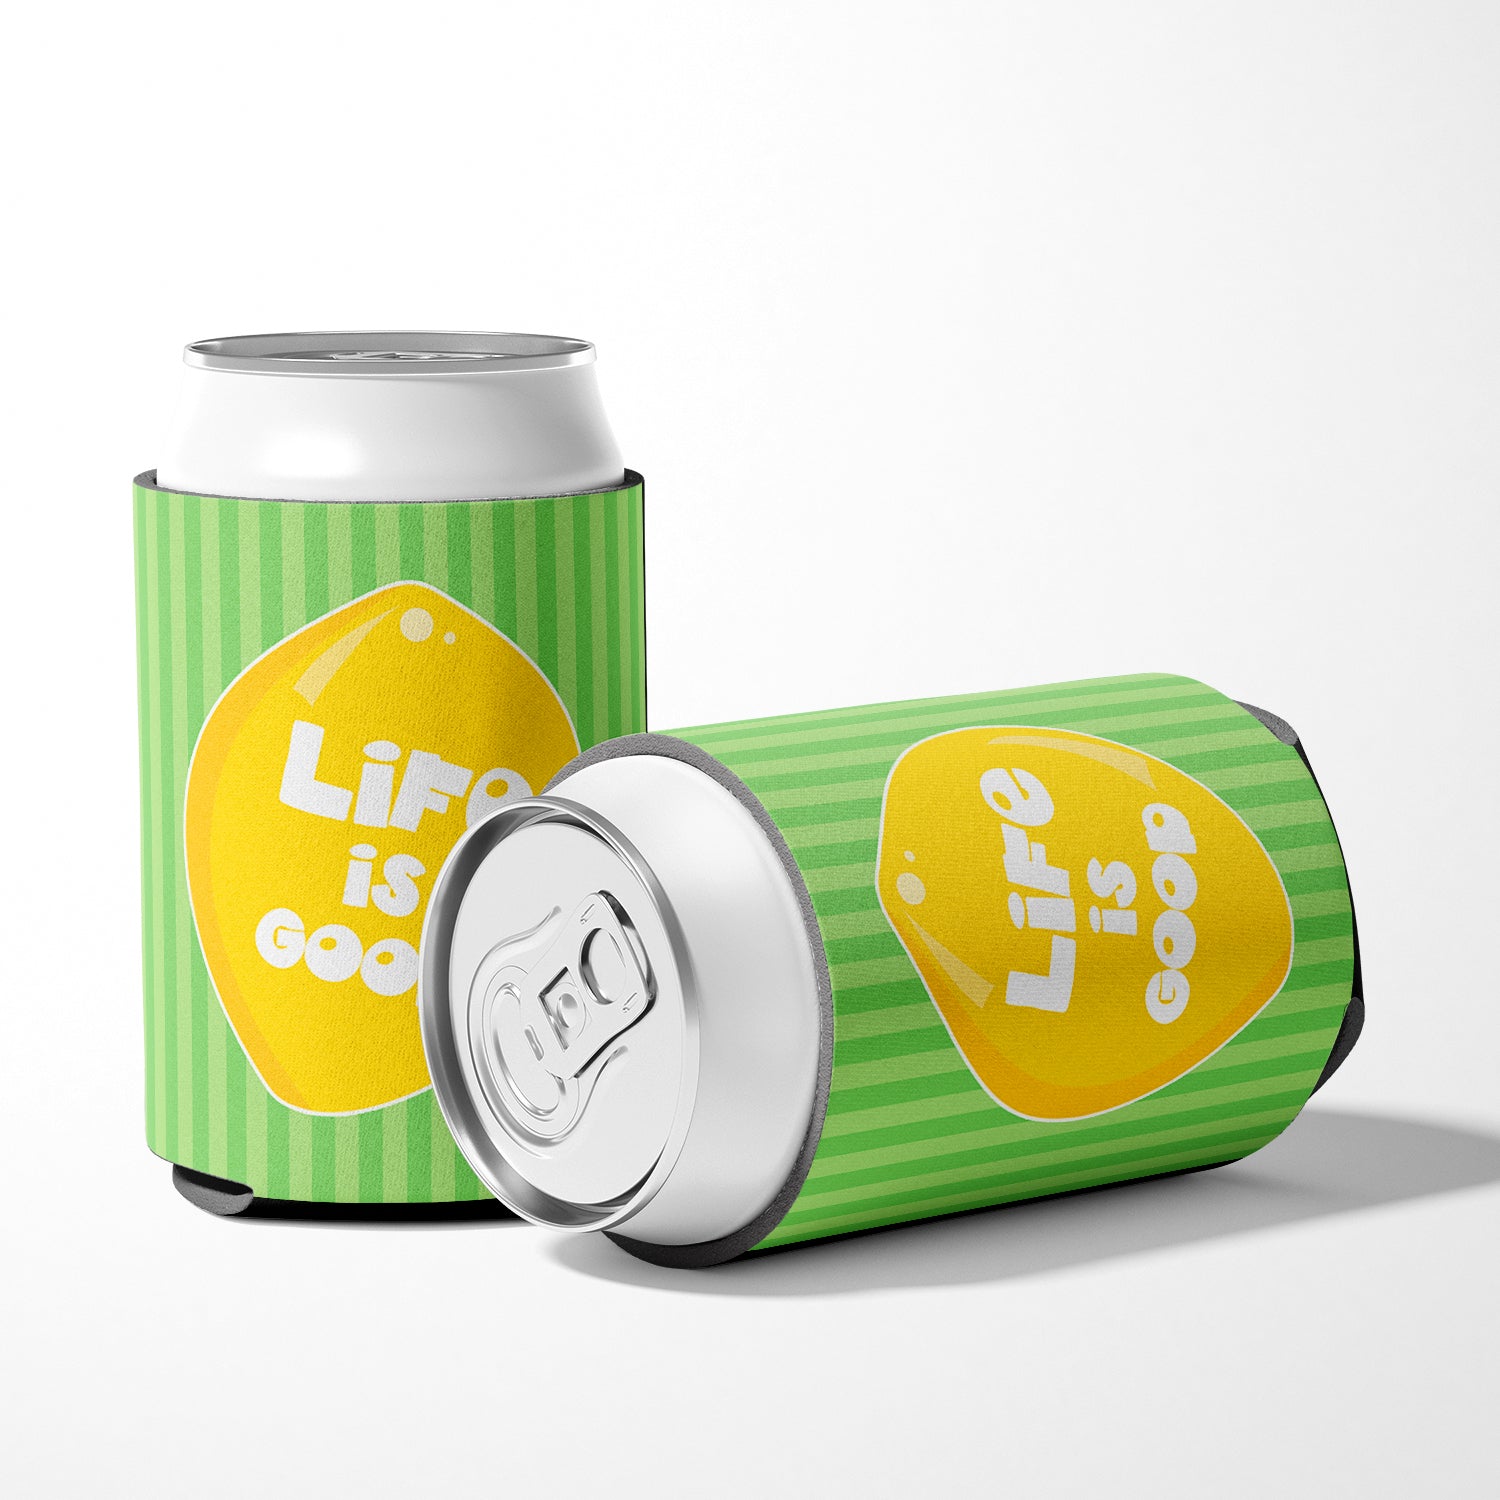 Lemon Life is Good Can or Bottle Hugger BB7108CC